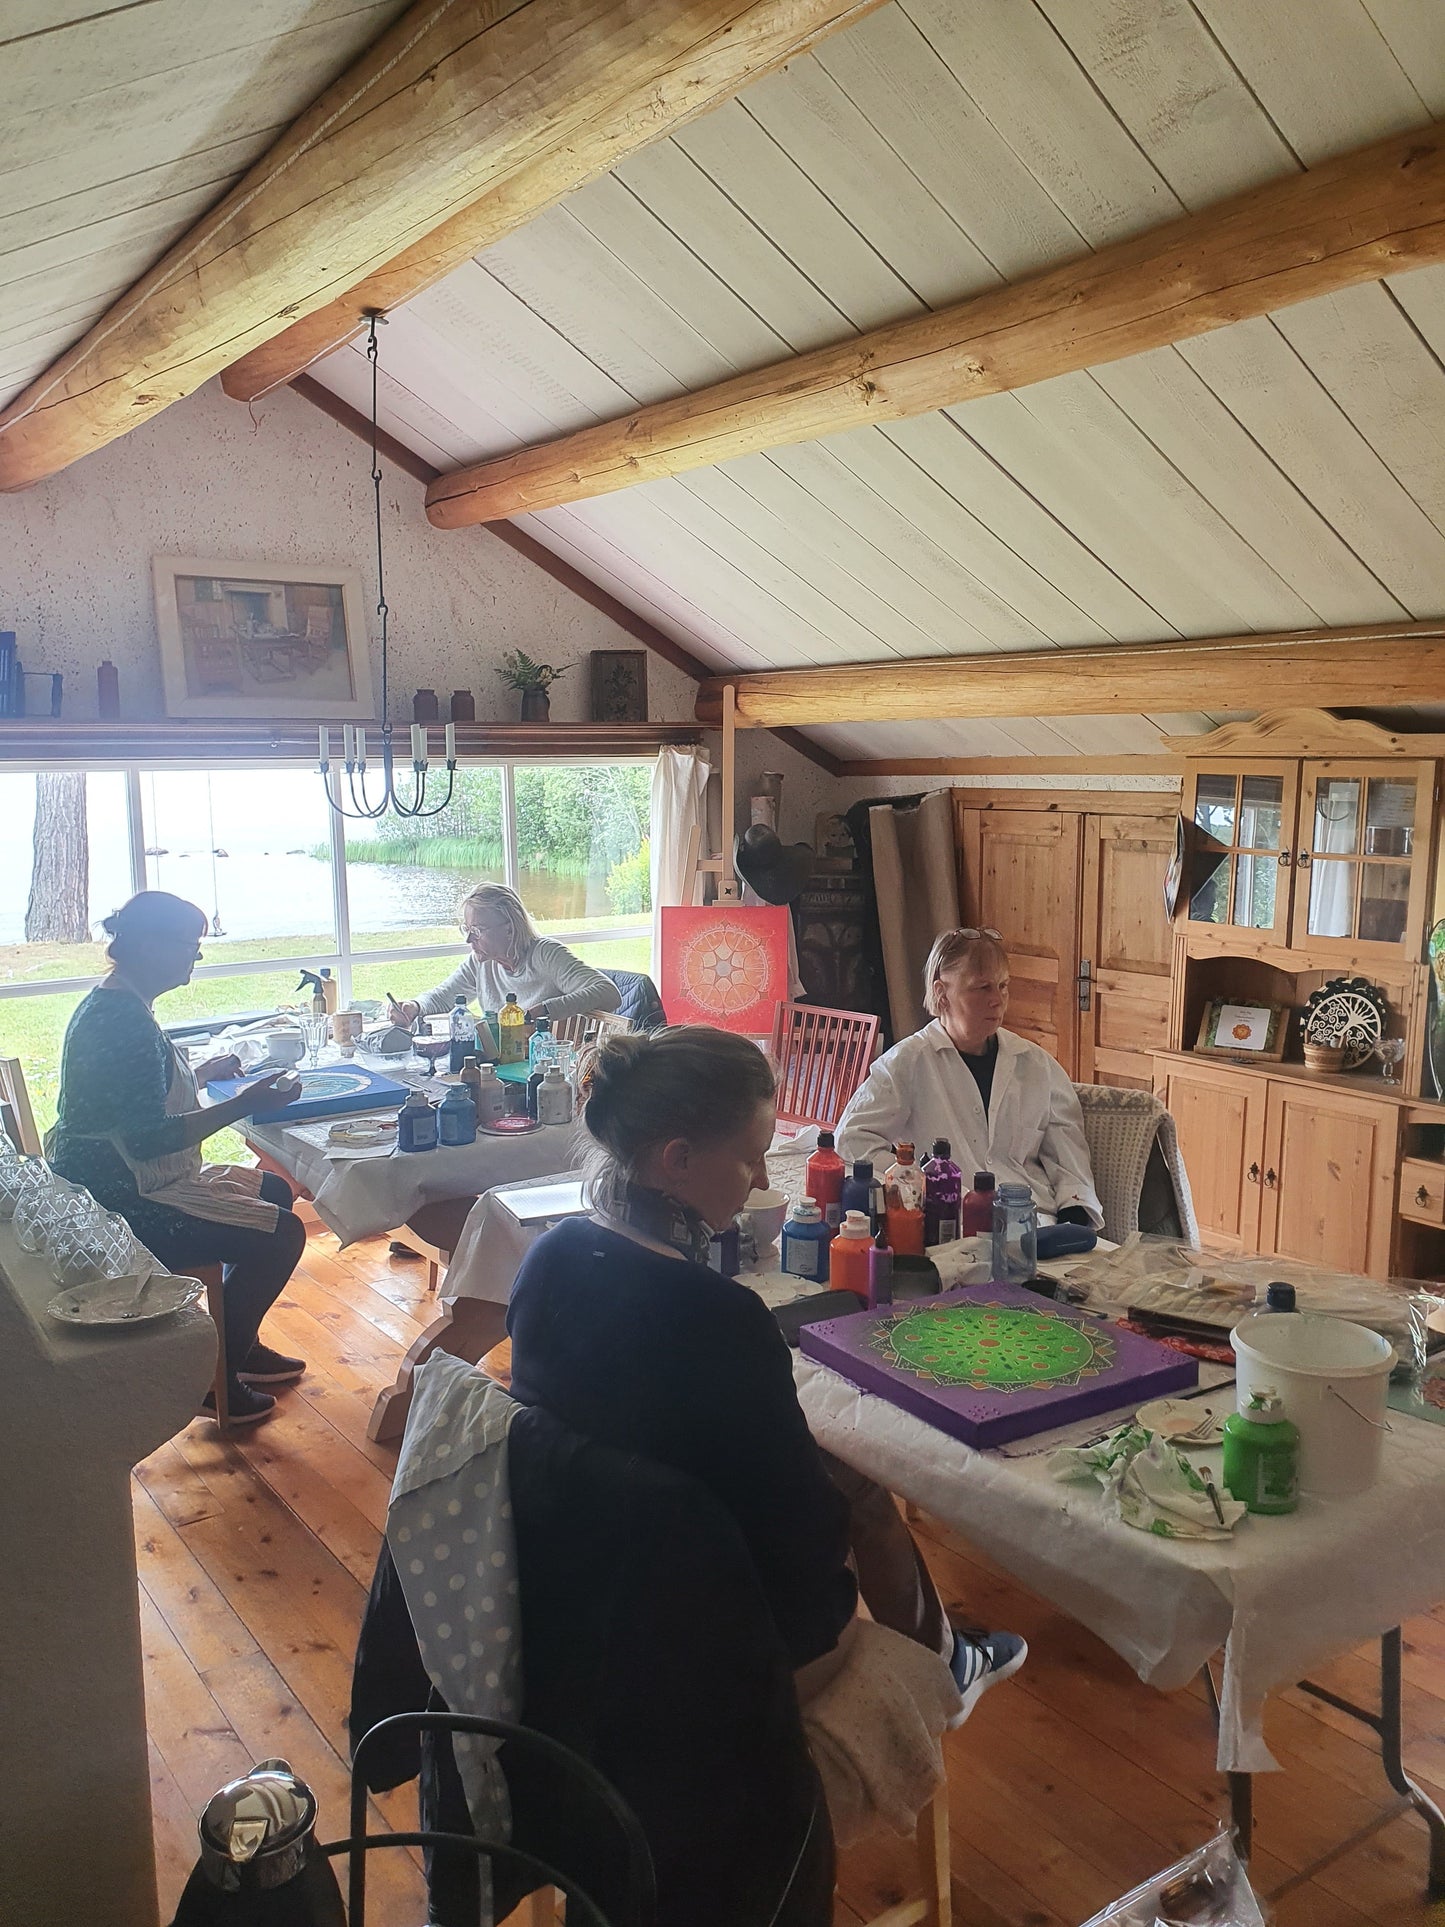 Återhämtning med måleri & meditation vid Siljan, 3 dagar kurs 4200 kr 29-31 juli